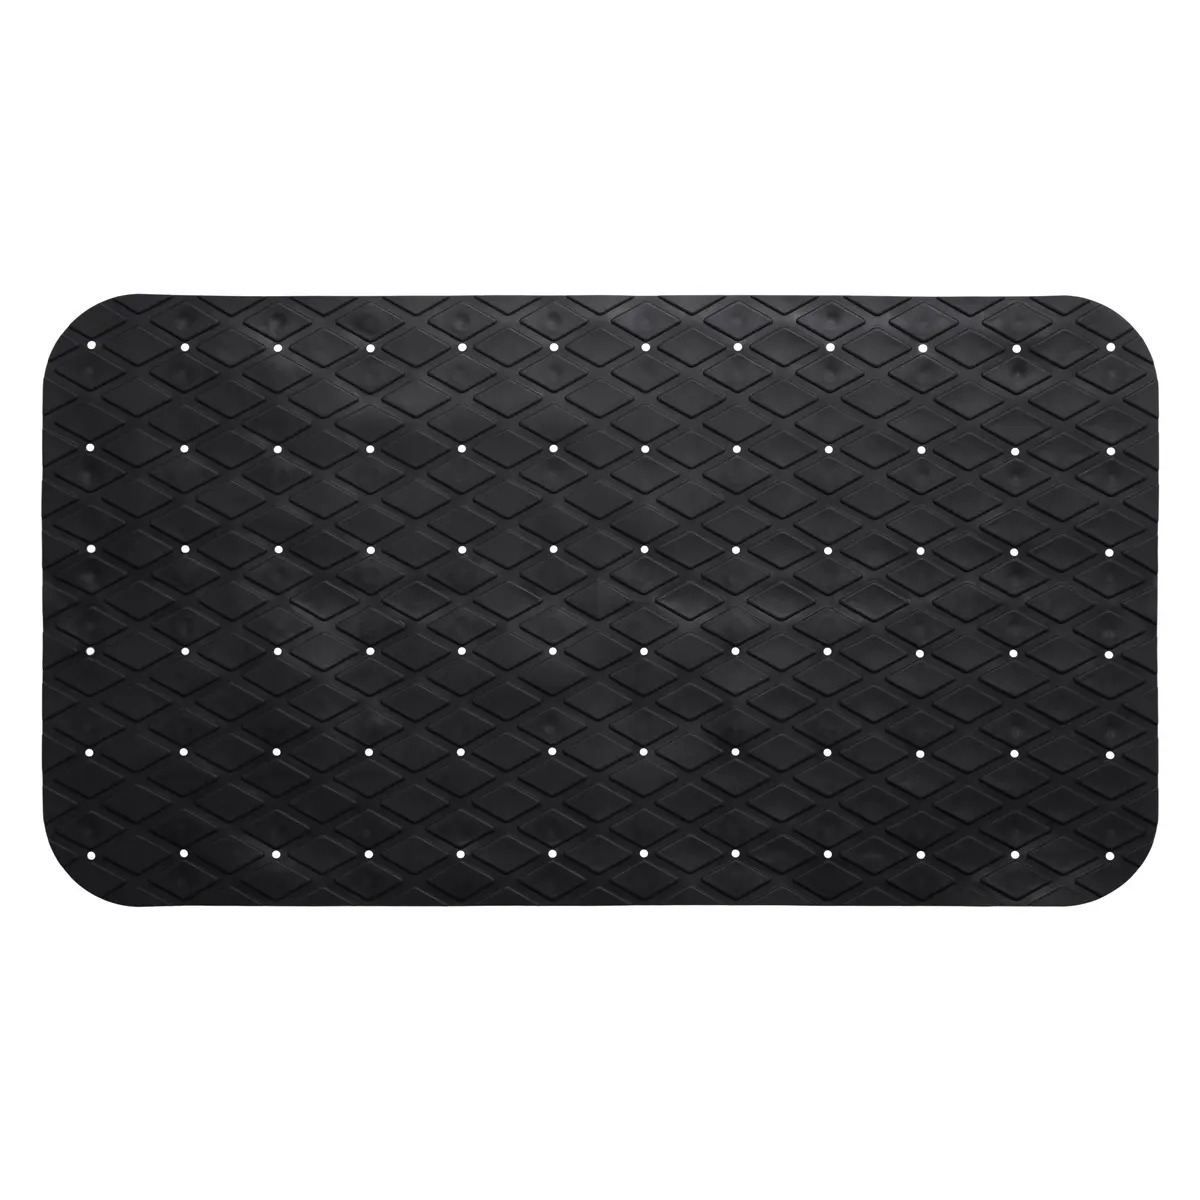 Badkamer-douche-bad anti slip mat rubber voor op de vloer zwart 70 x 35 cm